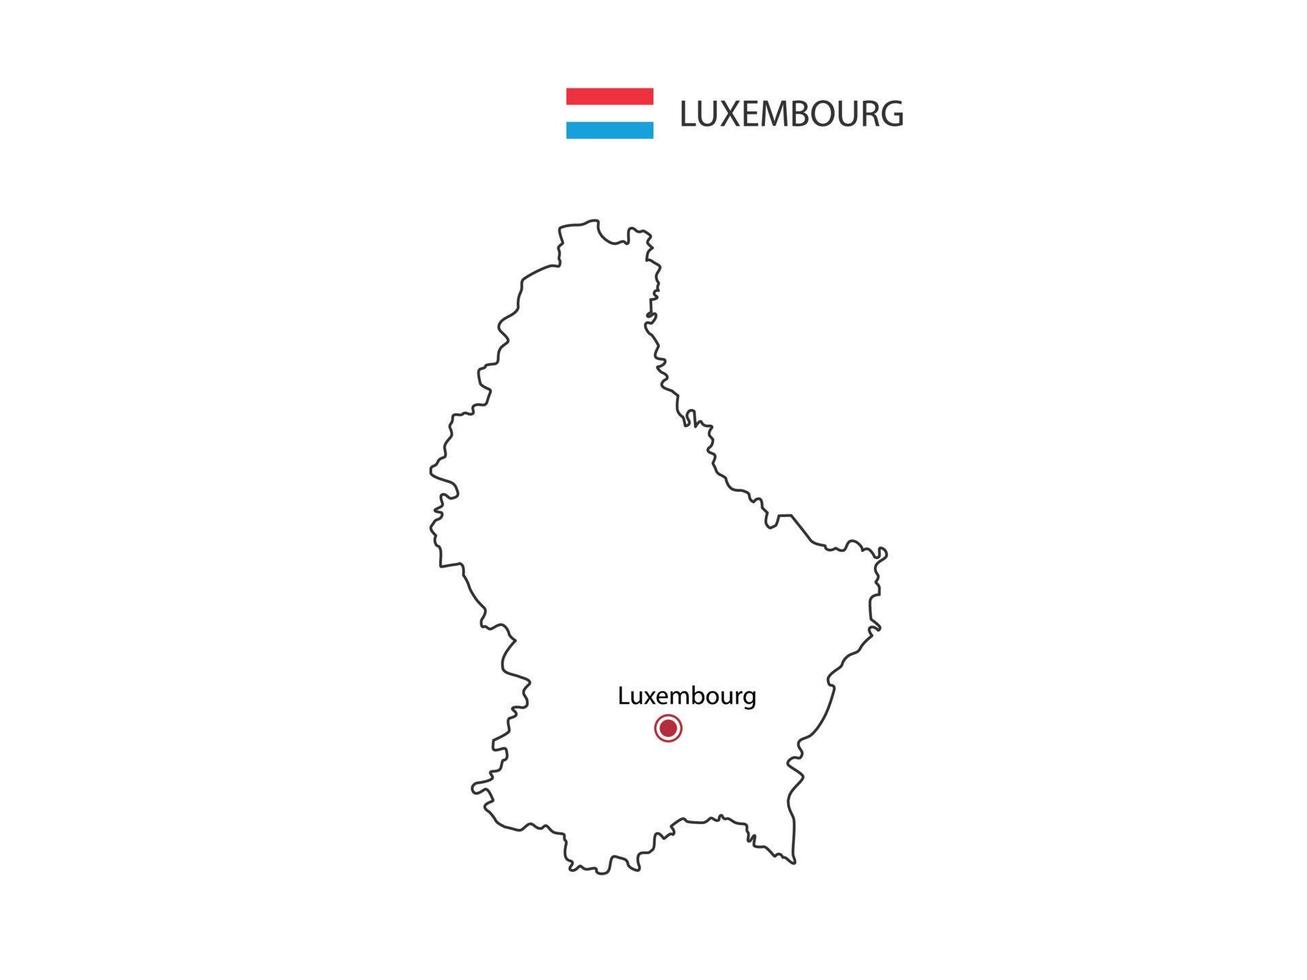 dibujar a mano el vector de línea negra delgada del mapa de luxemburgo con la ciudad capital luxemburgo sobre fondo blanco.